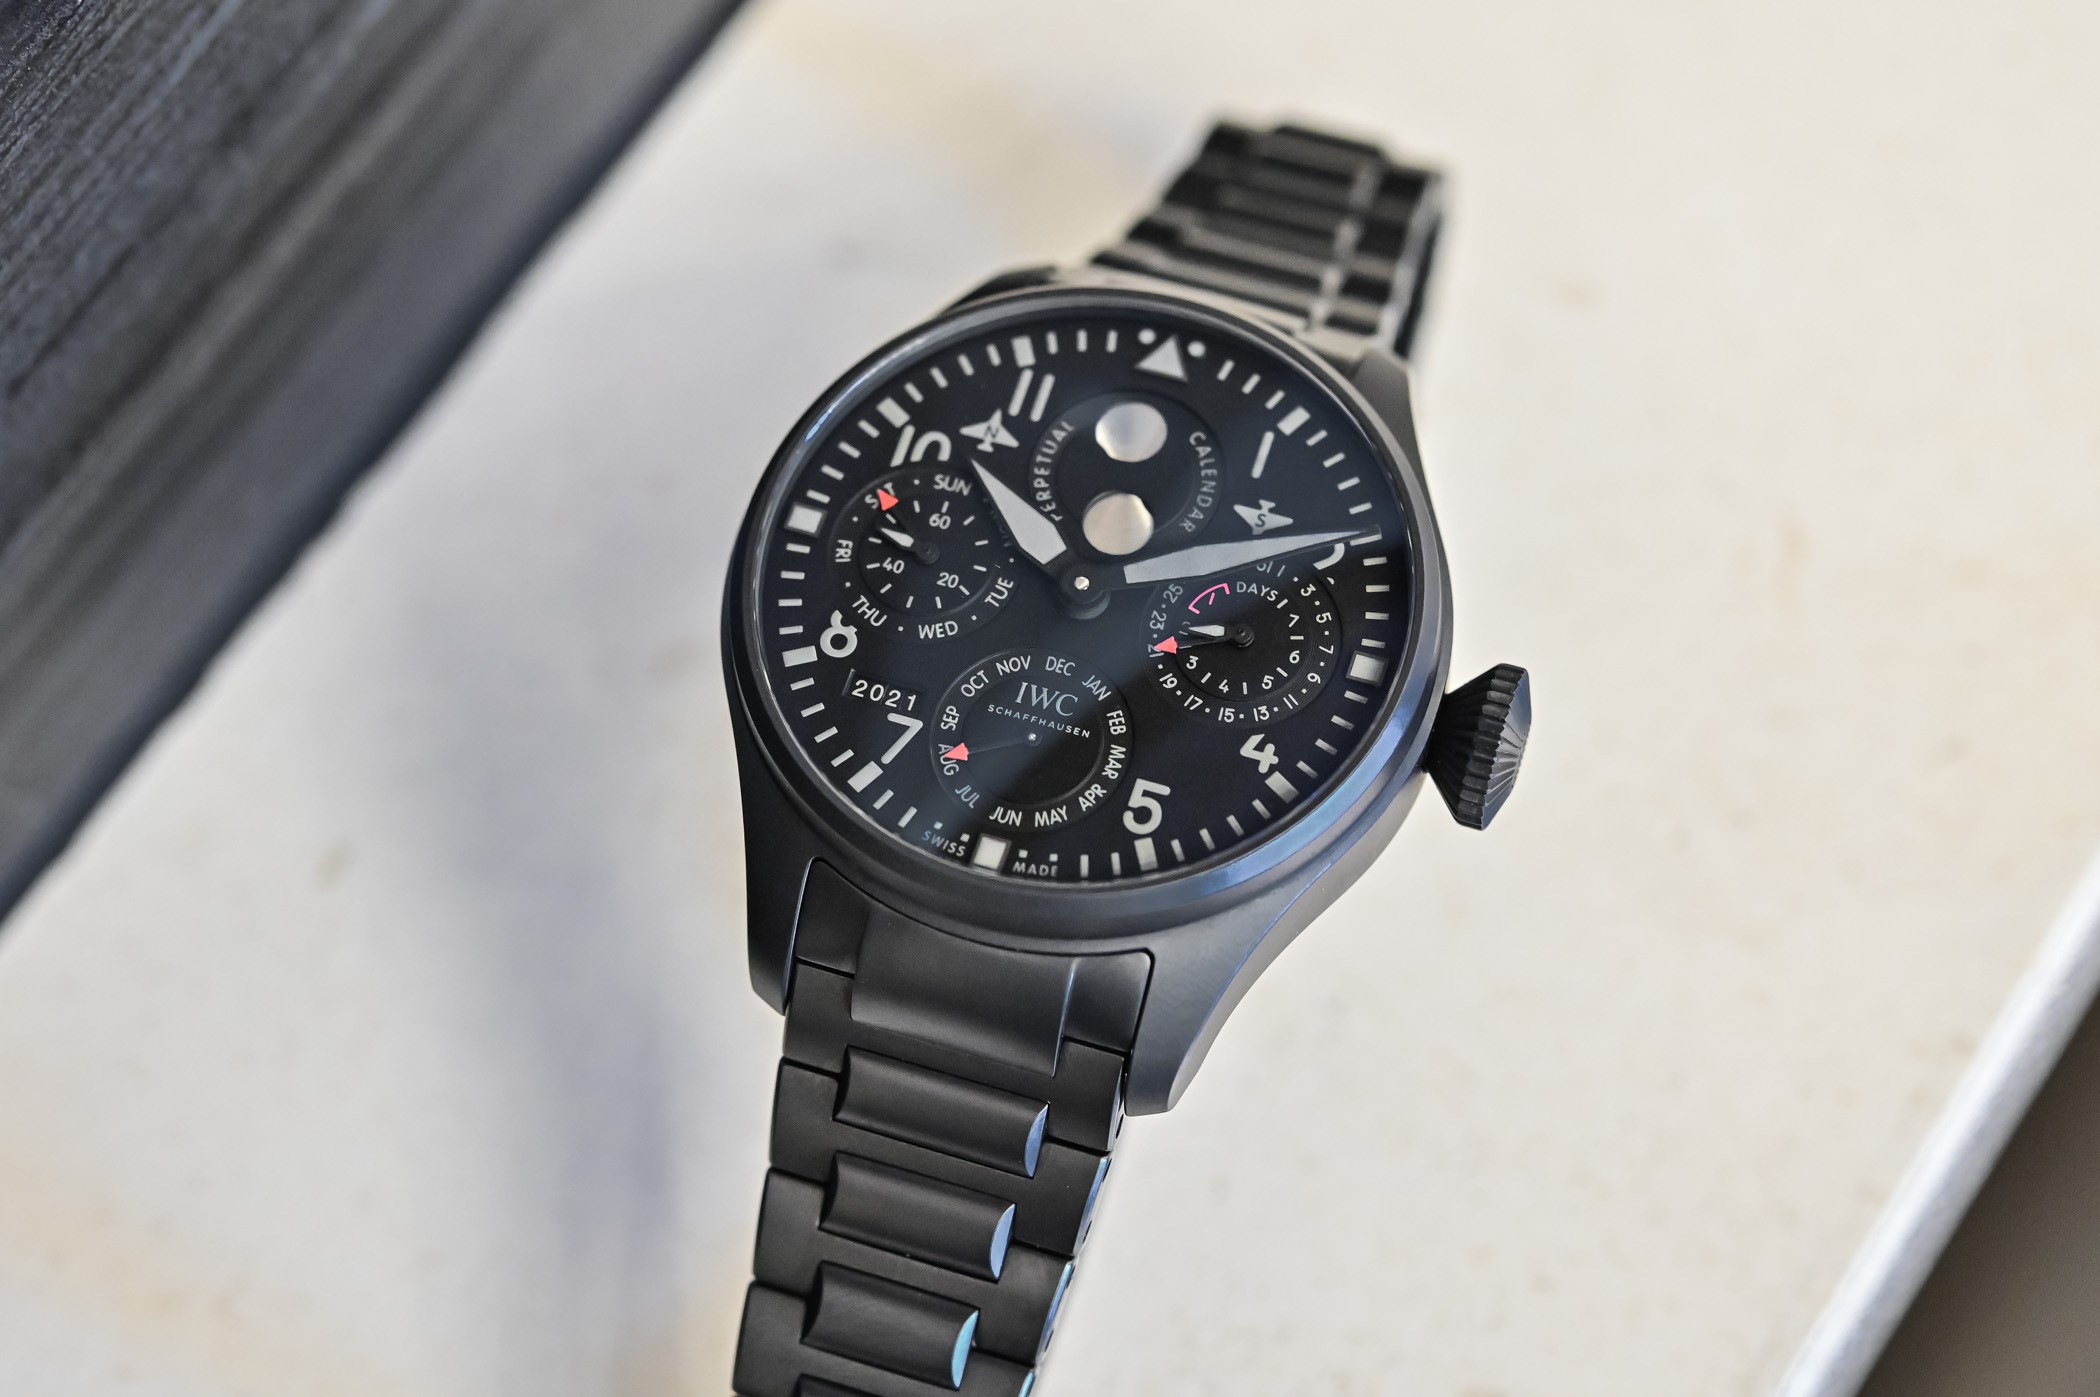 Представляем часы IWC Big Pilot's Watch Perpetual Calendar TOP GUN, впервые с кератановым корпусом и браслетом